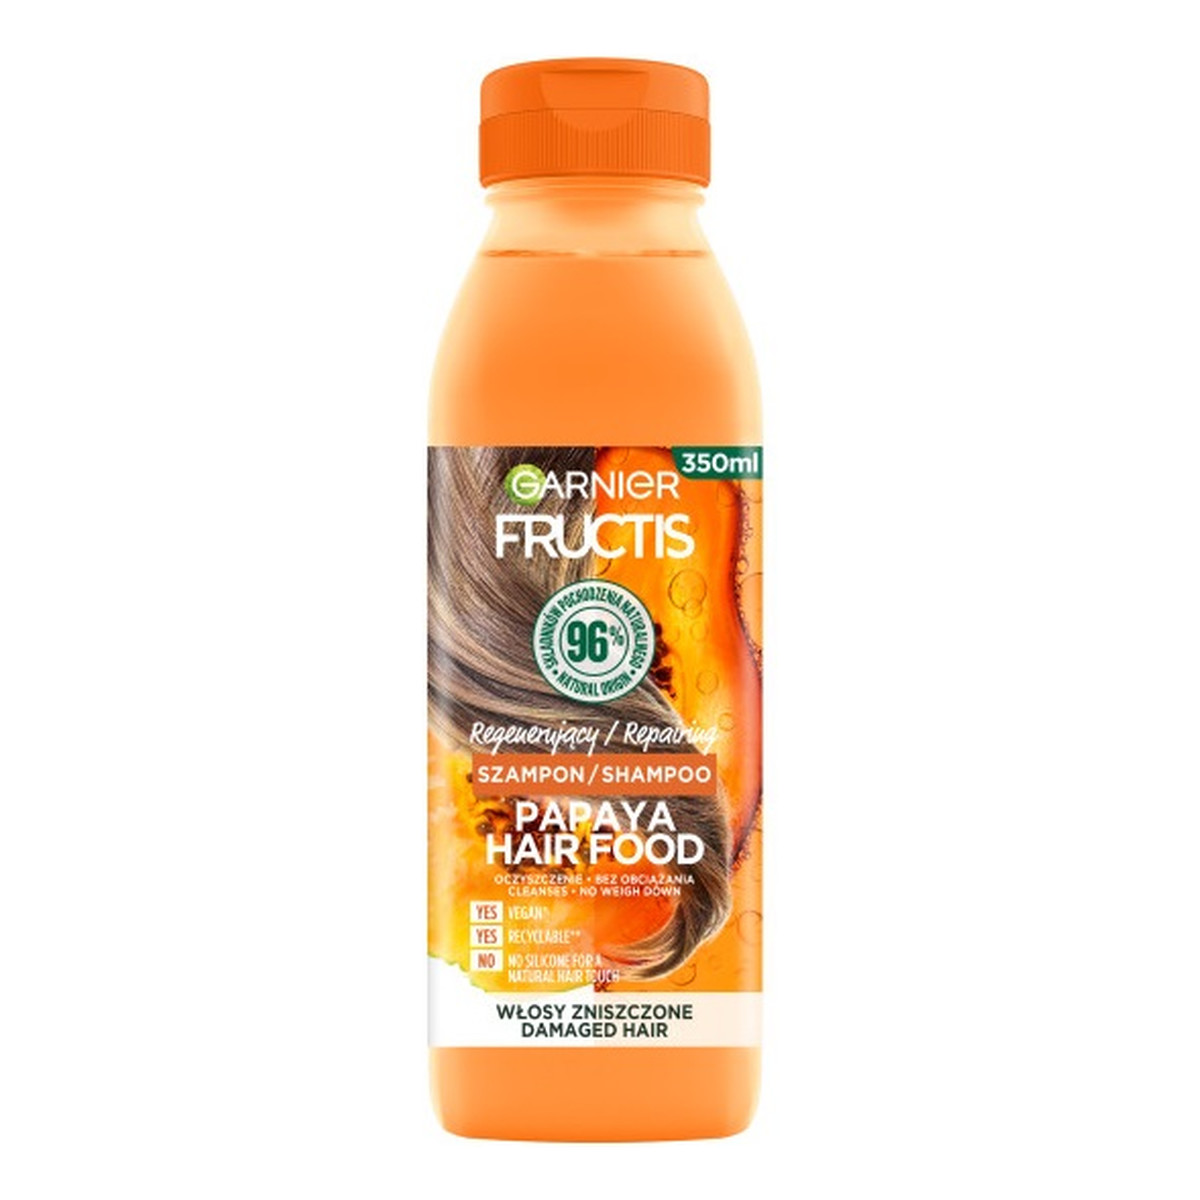 Garnier Fructis Papaya Hair Food szampon regenerujący do włosów zniszczonych 350ml